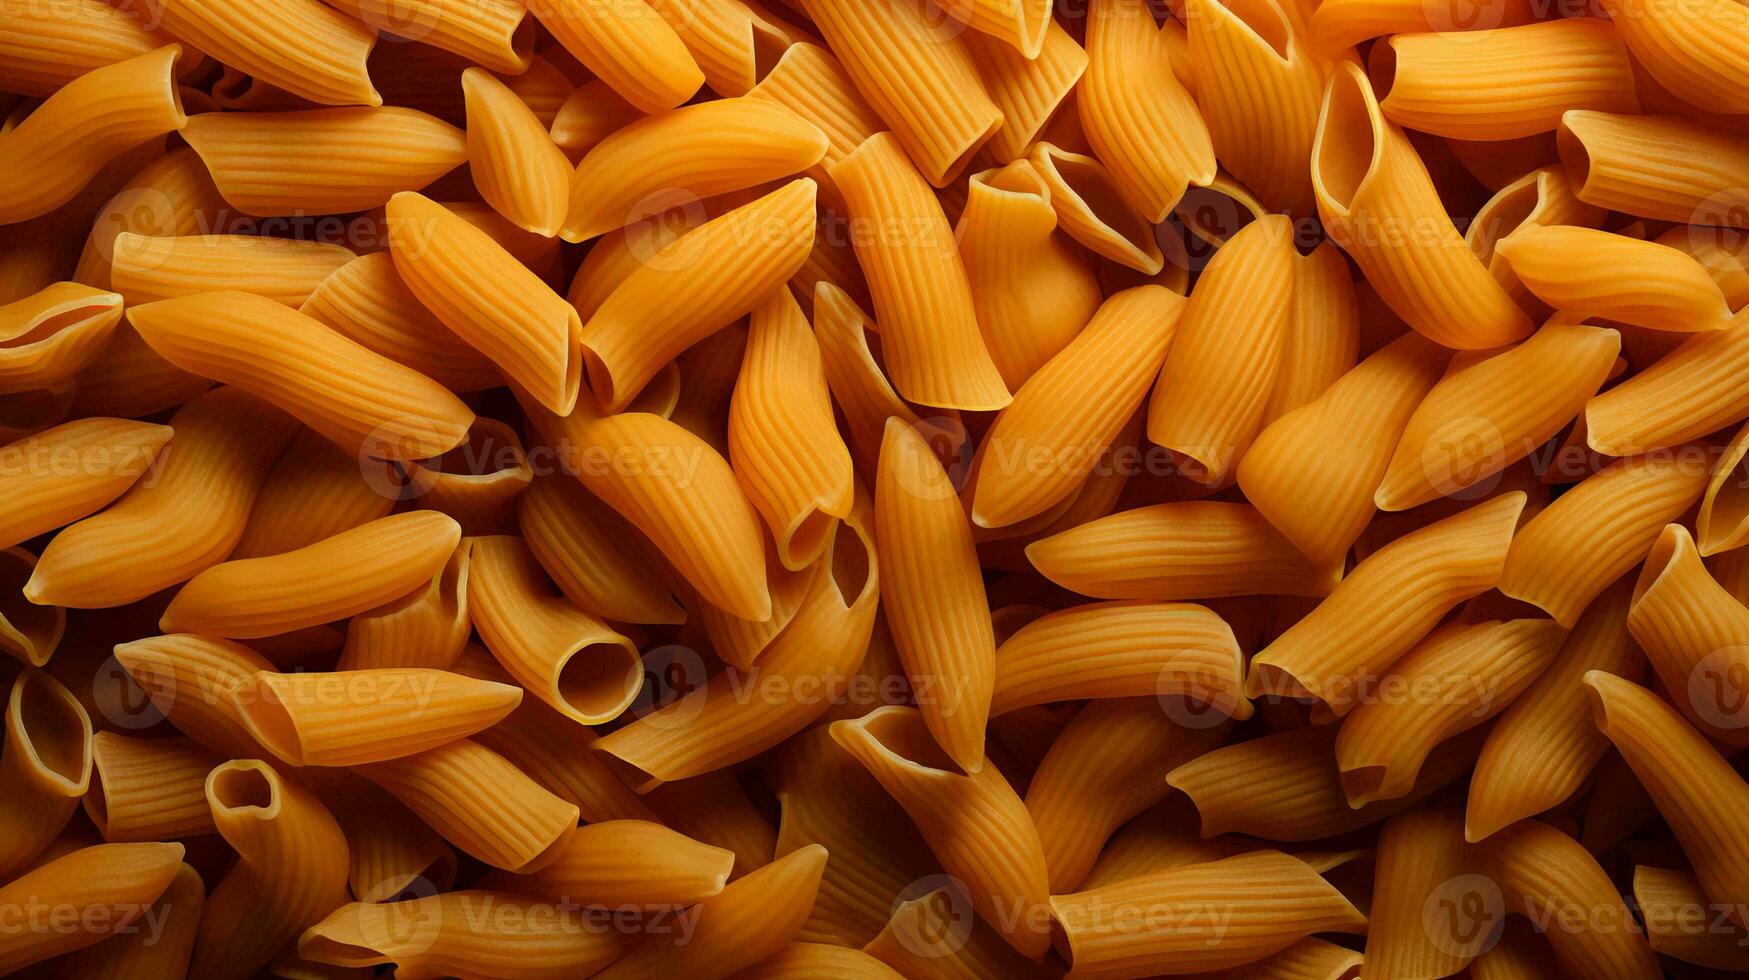 structuur van geel durum tarwe pasta achtergrond foto